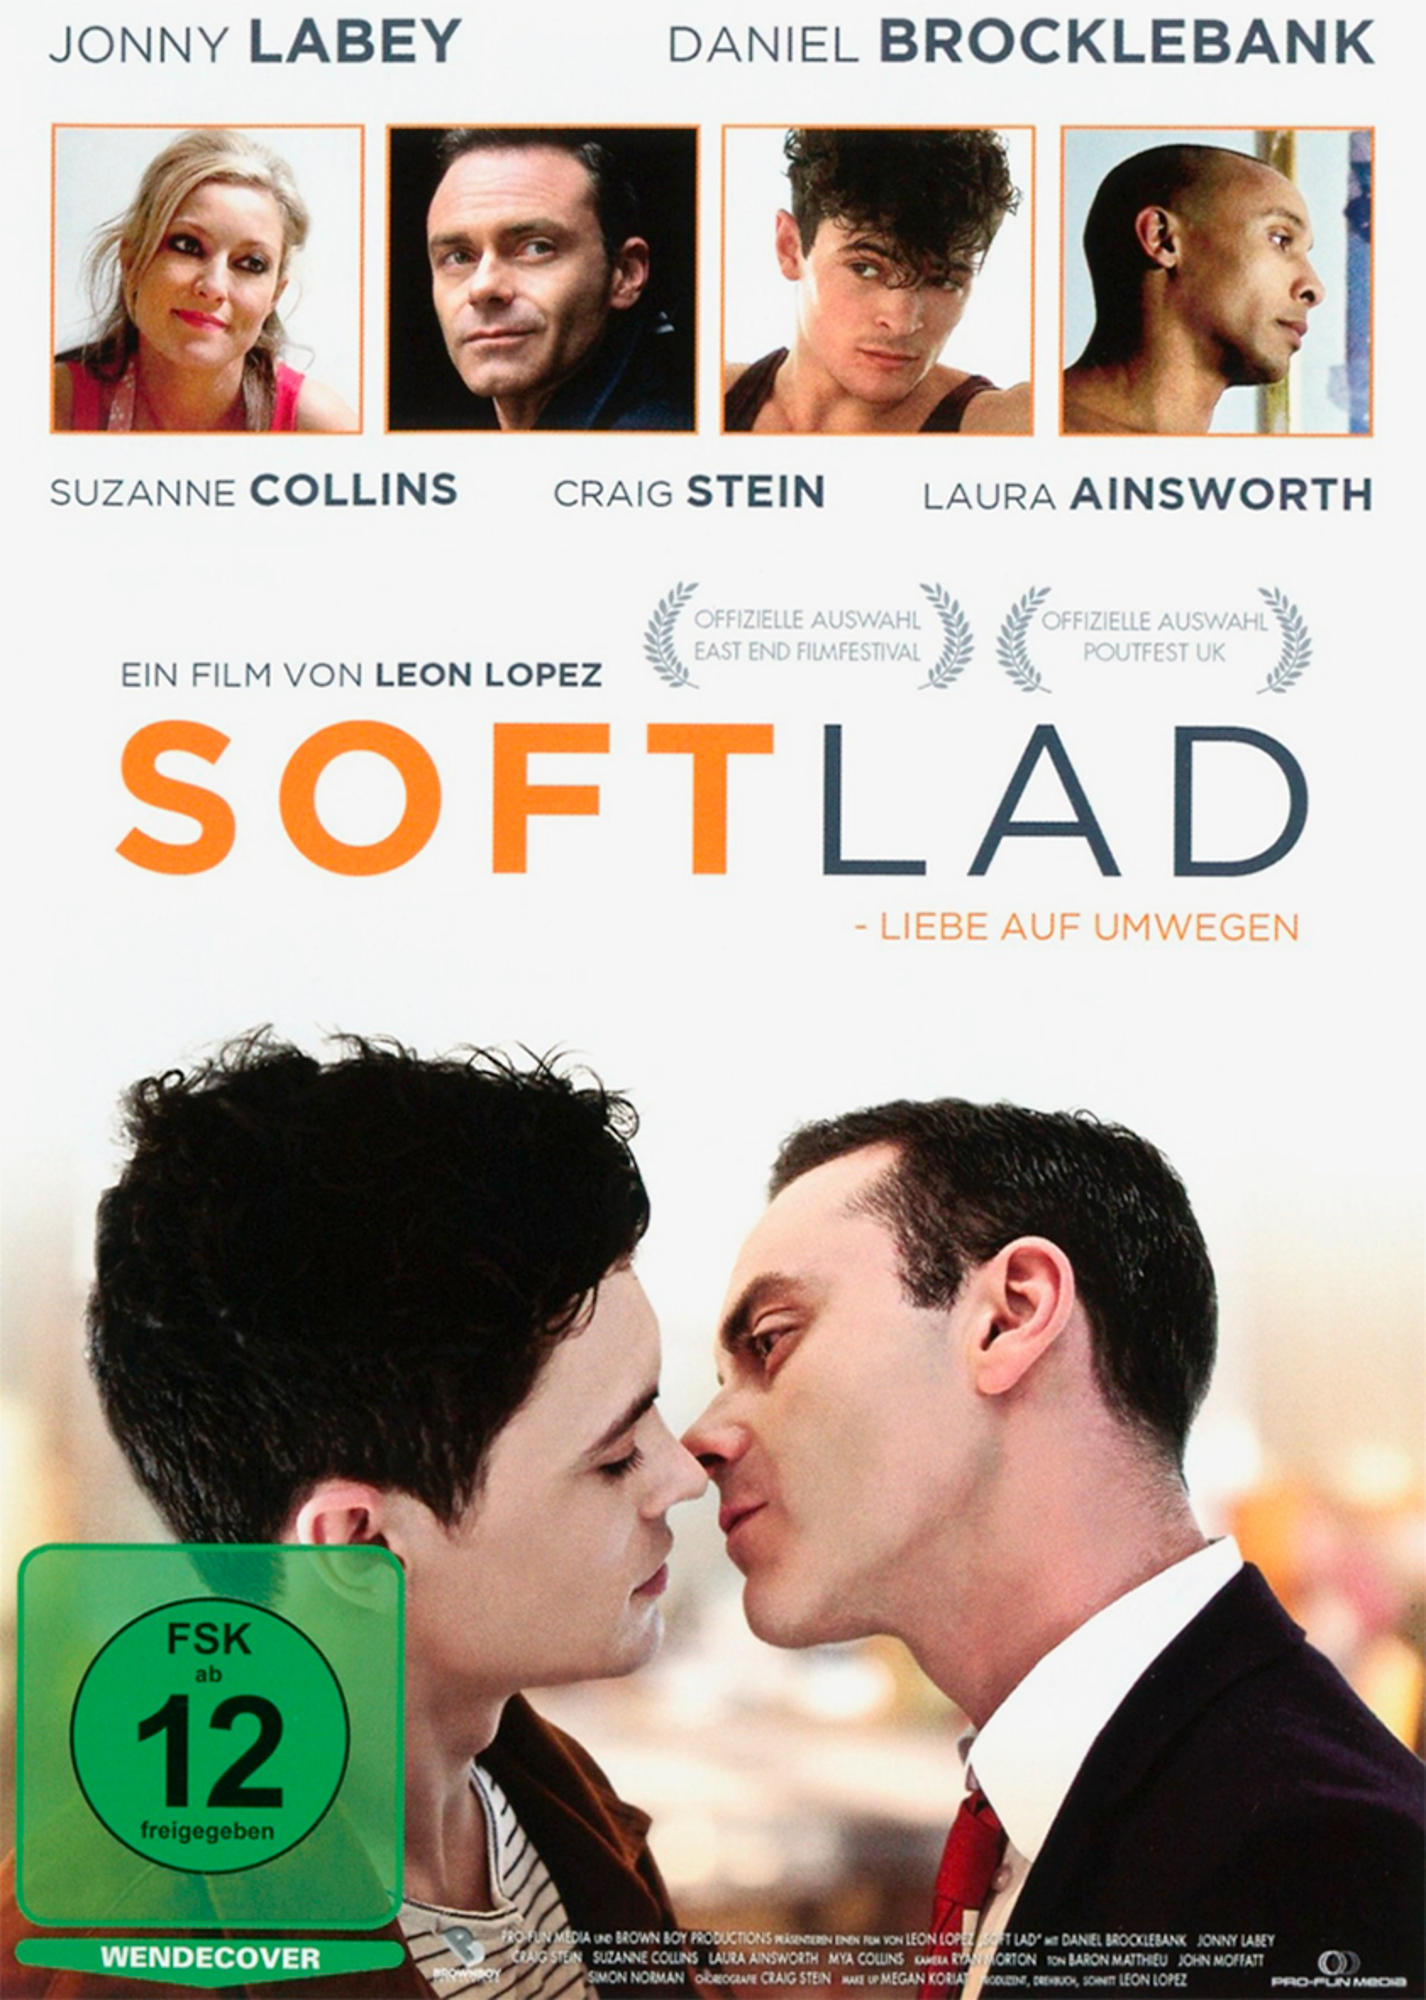 Soft Lad-Liebe Auf DVD Umwegen